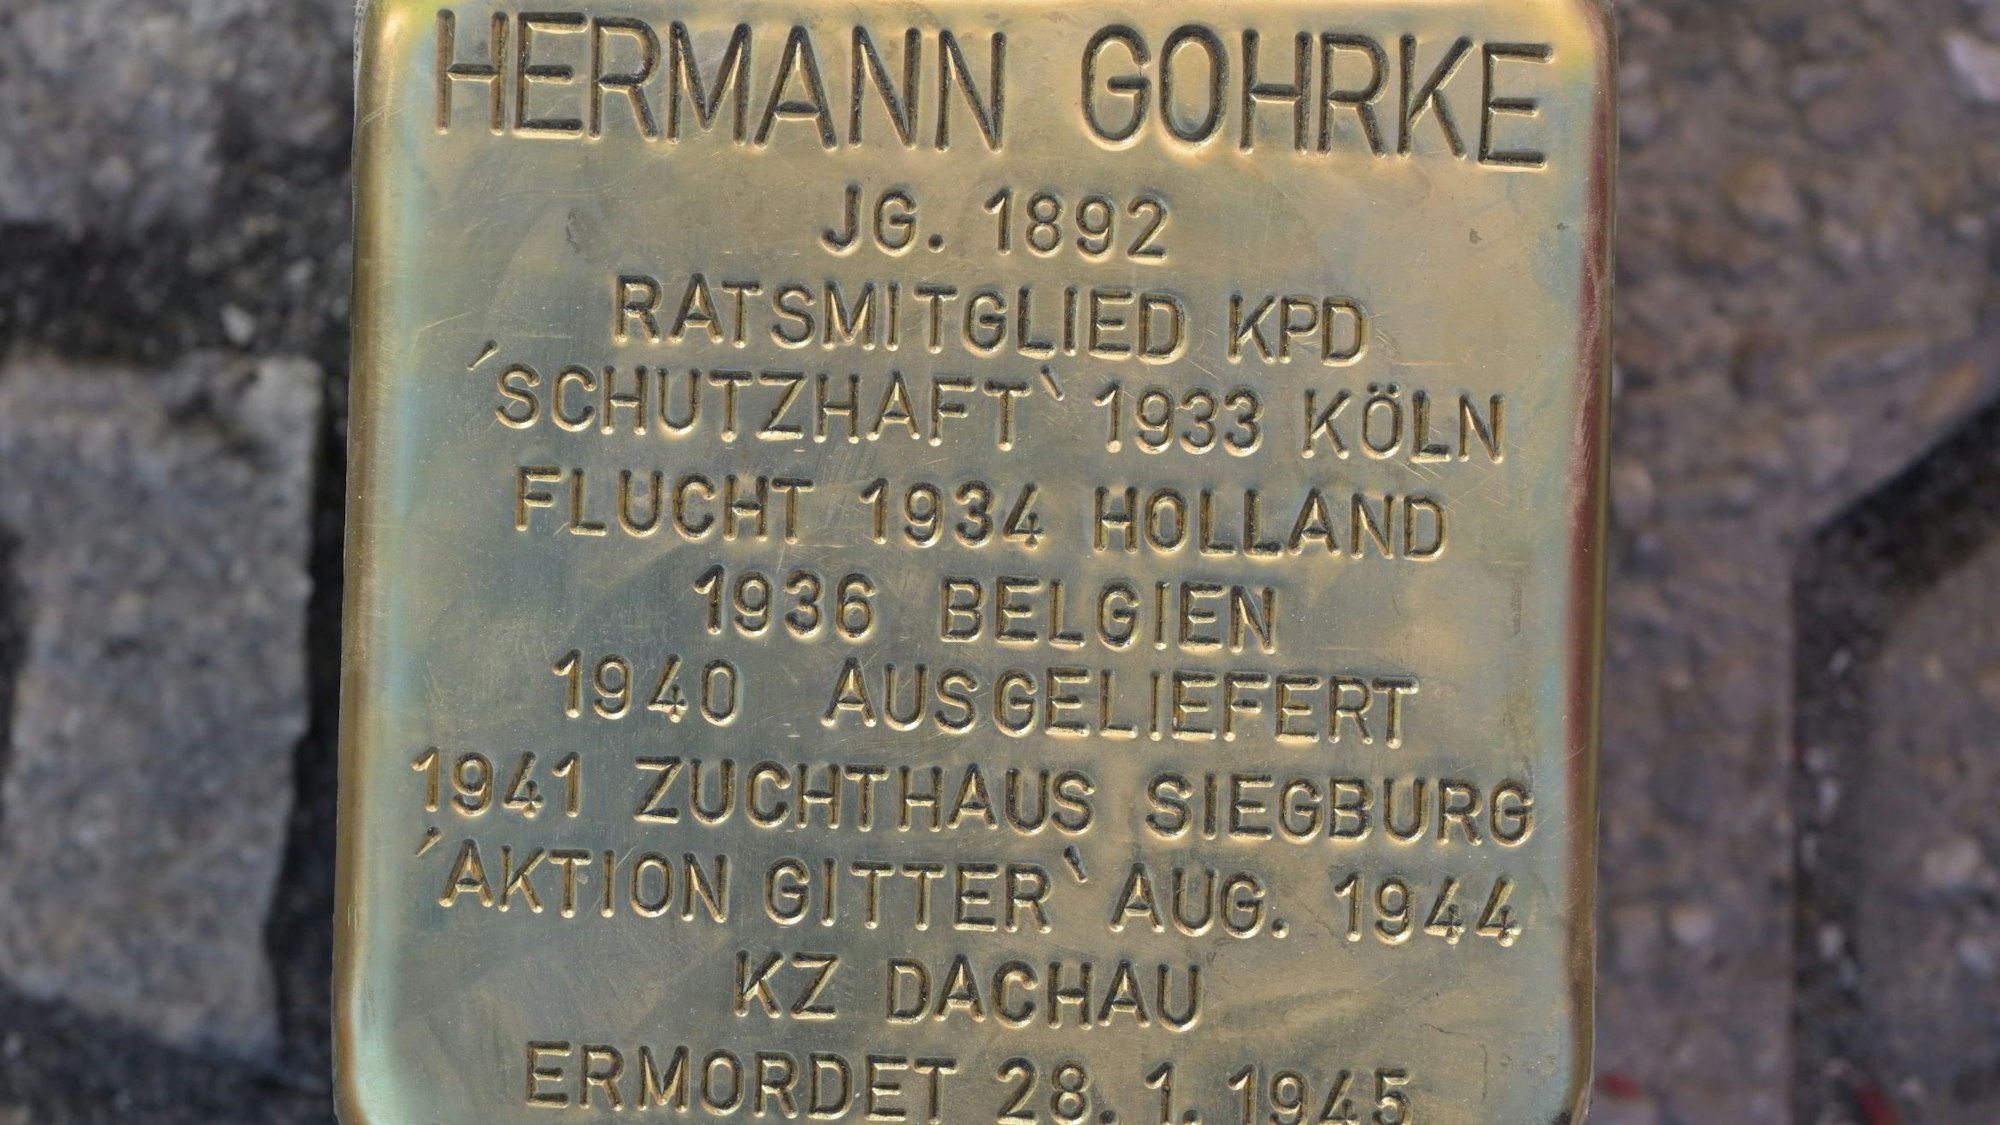 Das Foto zeigt den Gedekstein für Hermann Gohrke